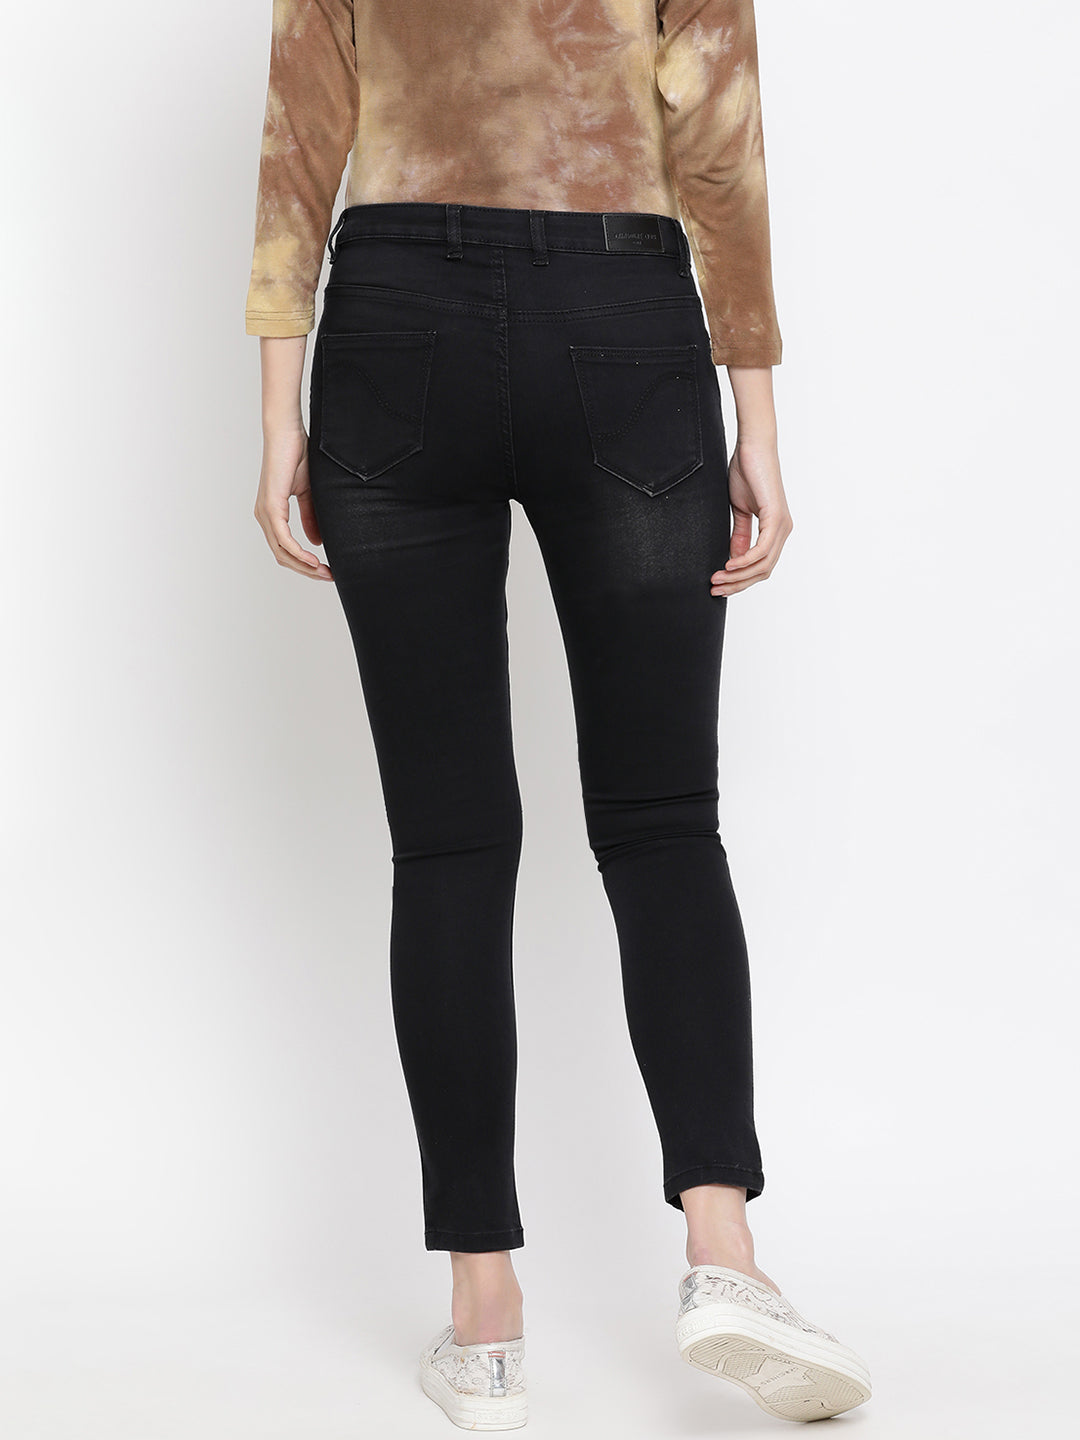 Black Jeans - Women Jeans